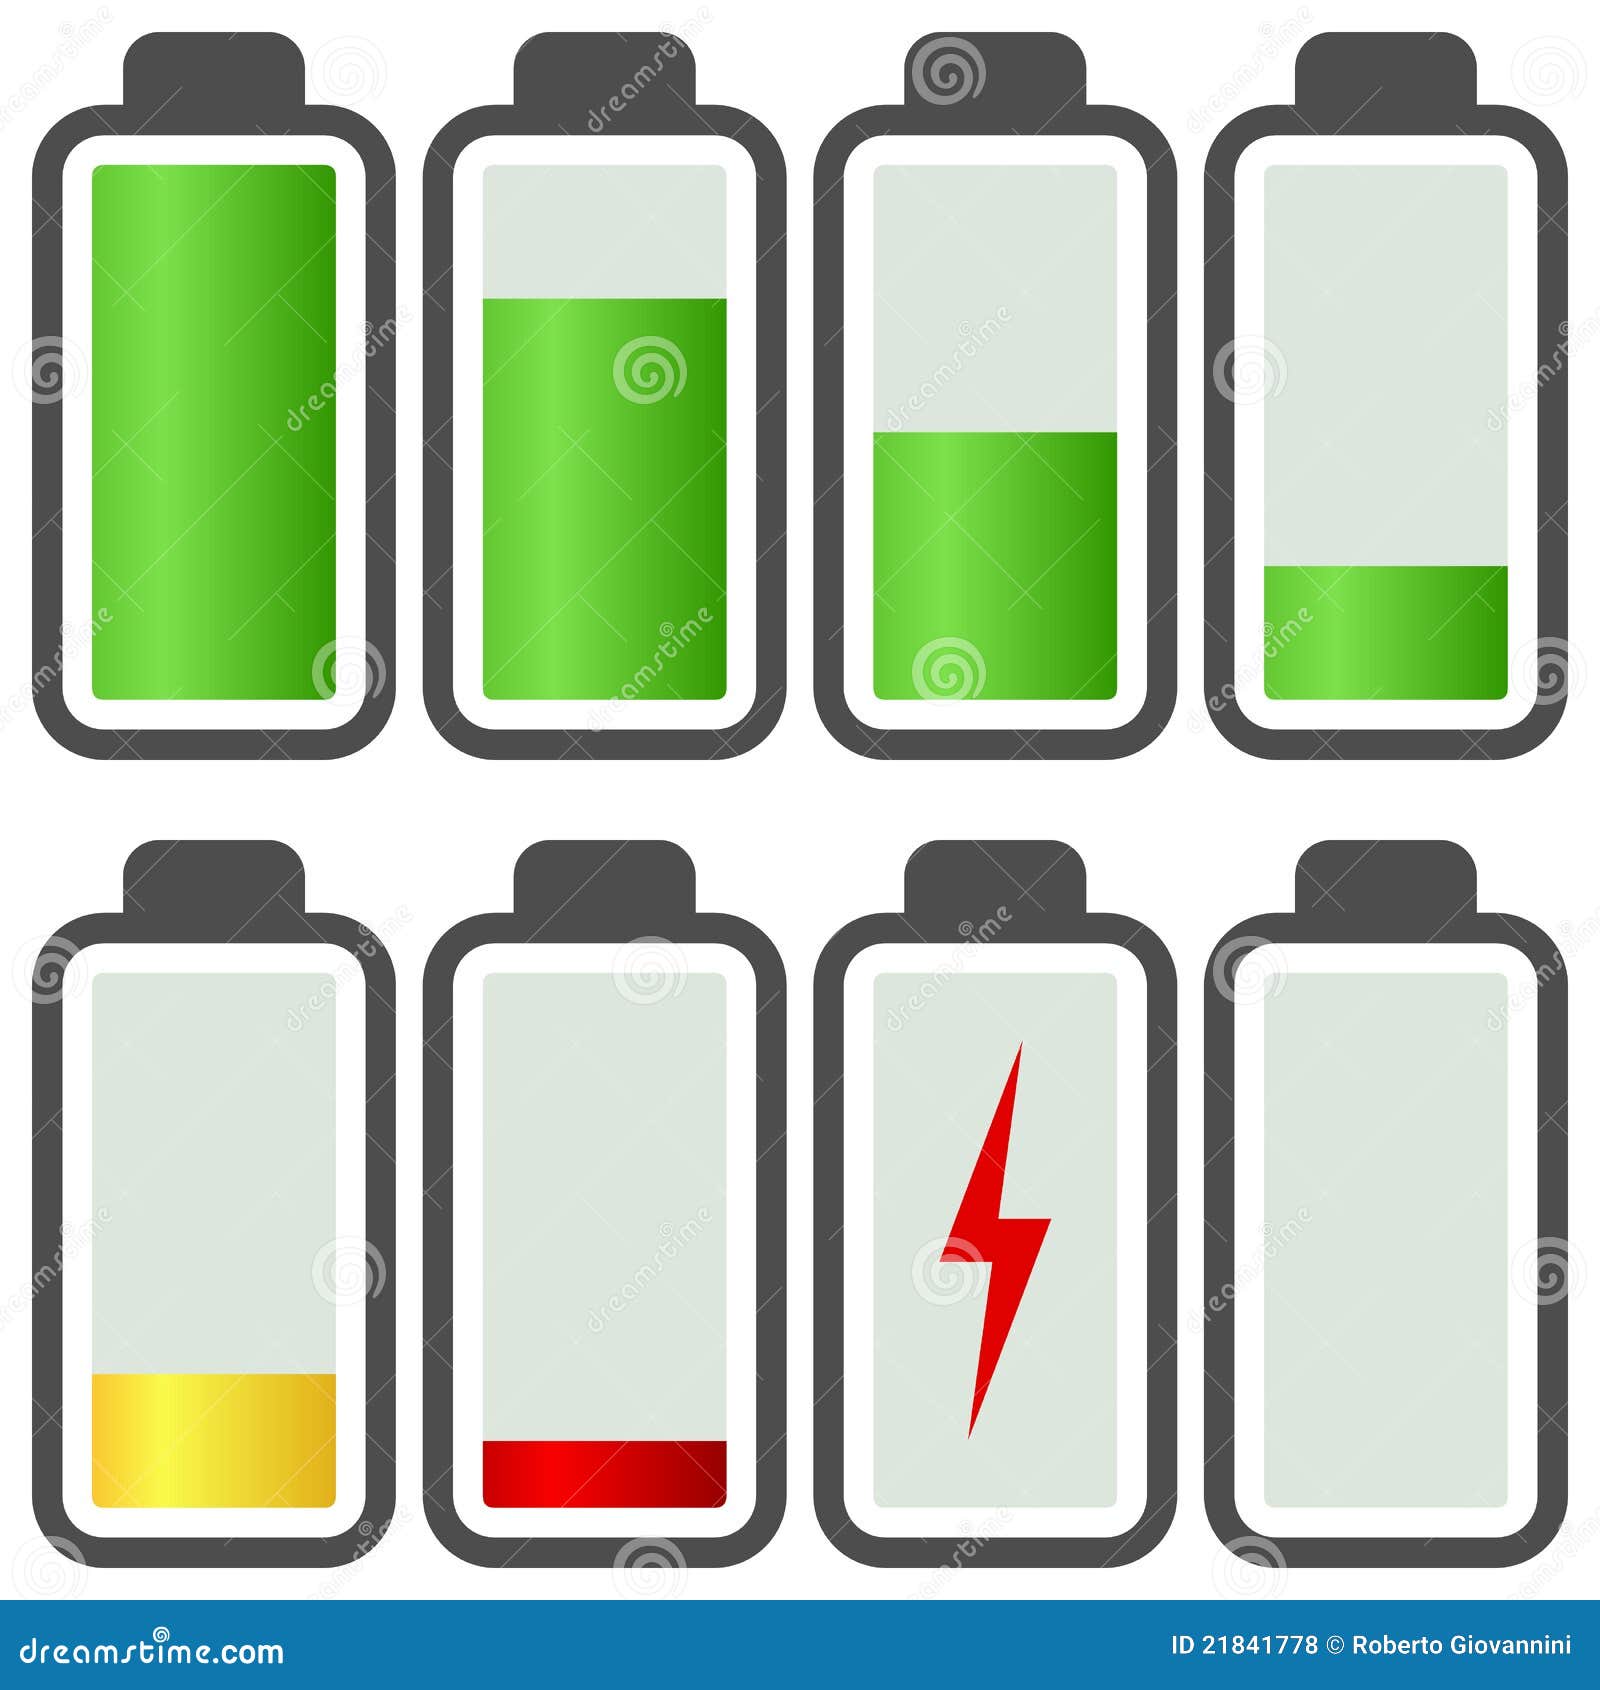 battery energy indicator icons